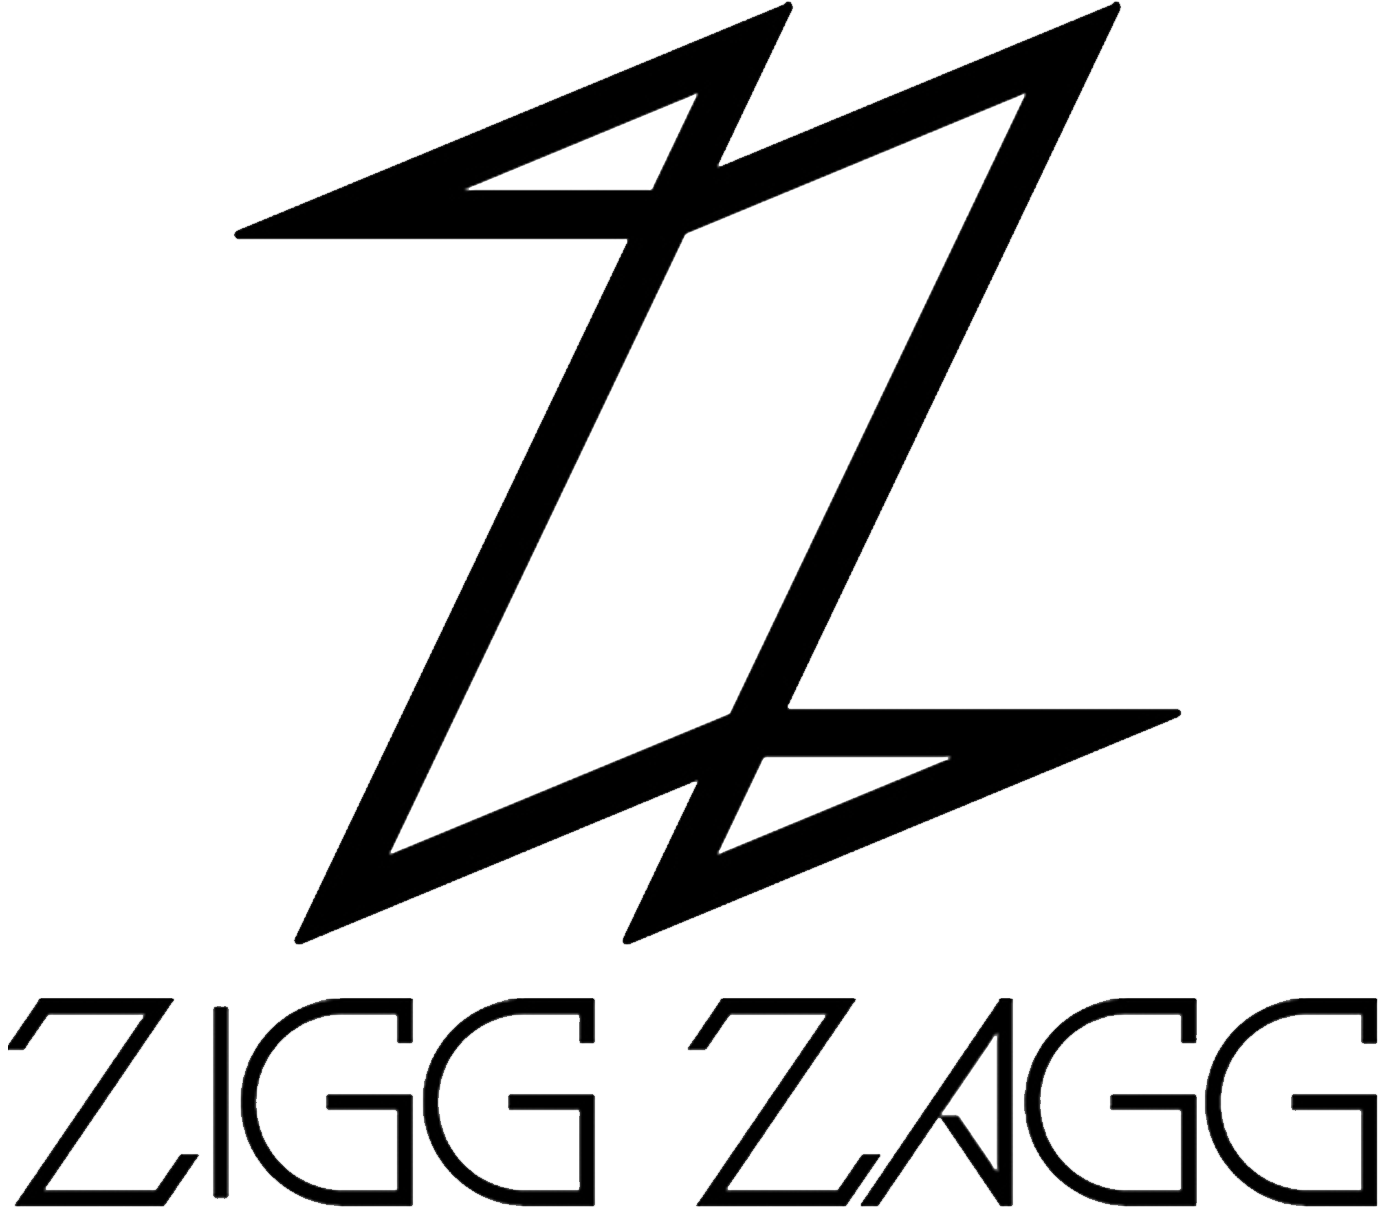 Logo vanZiggZagg